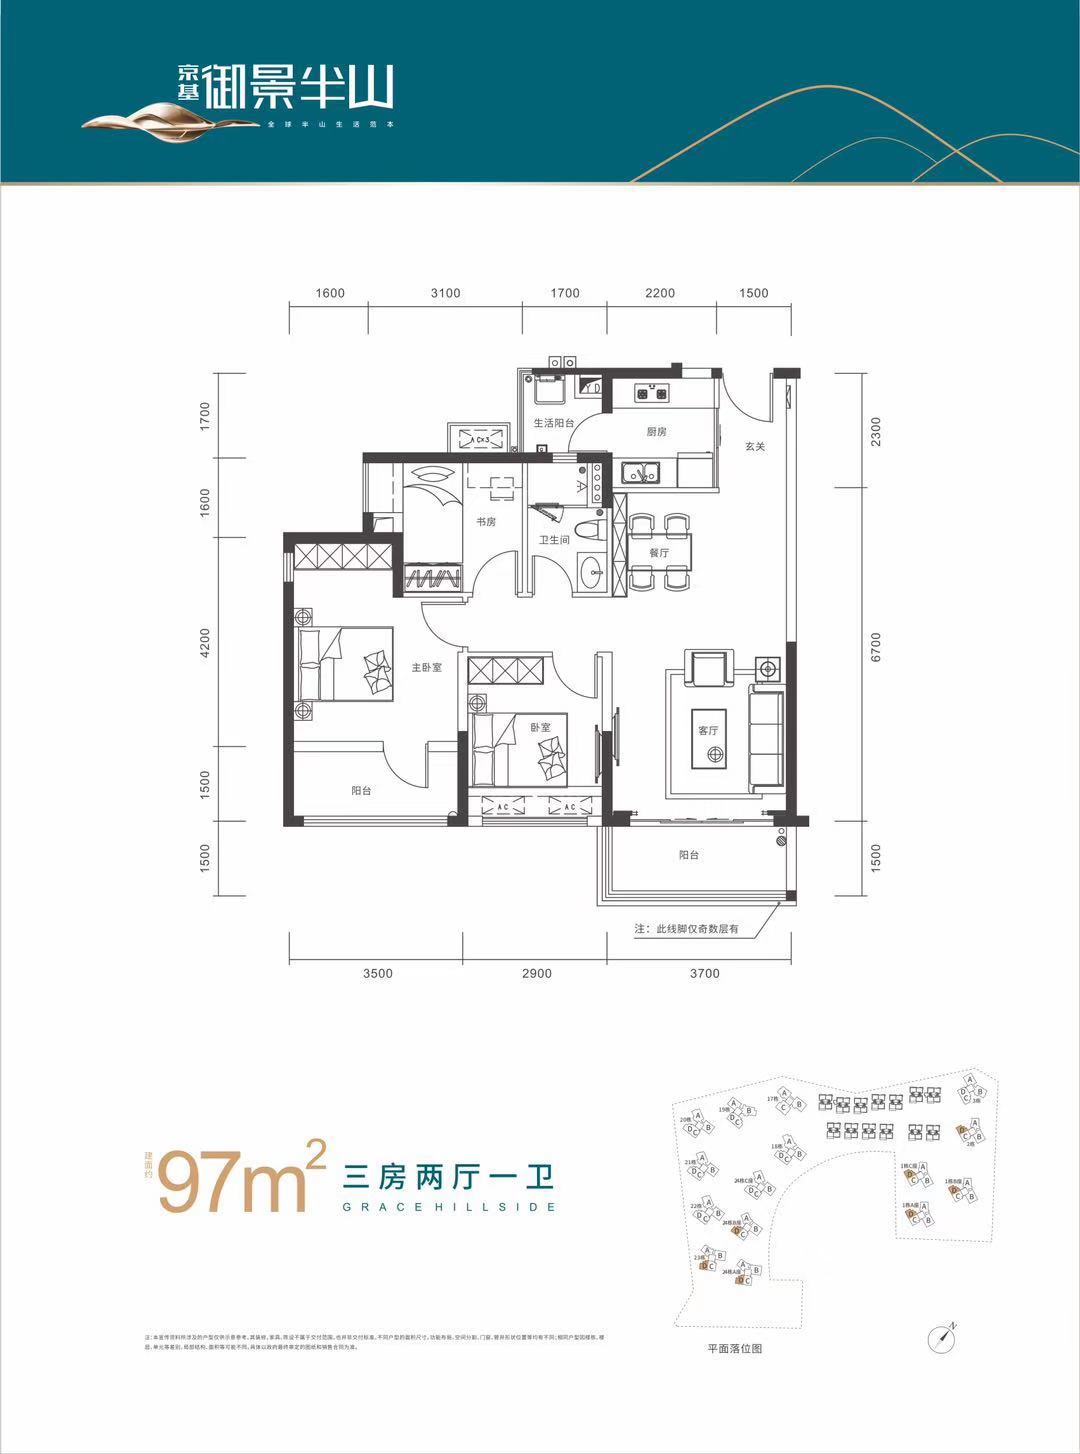 京基御景半山3室2厅1卫97㎡户型图